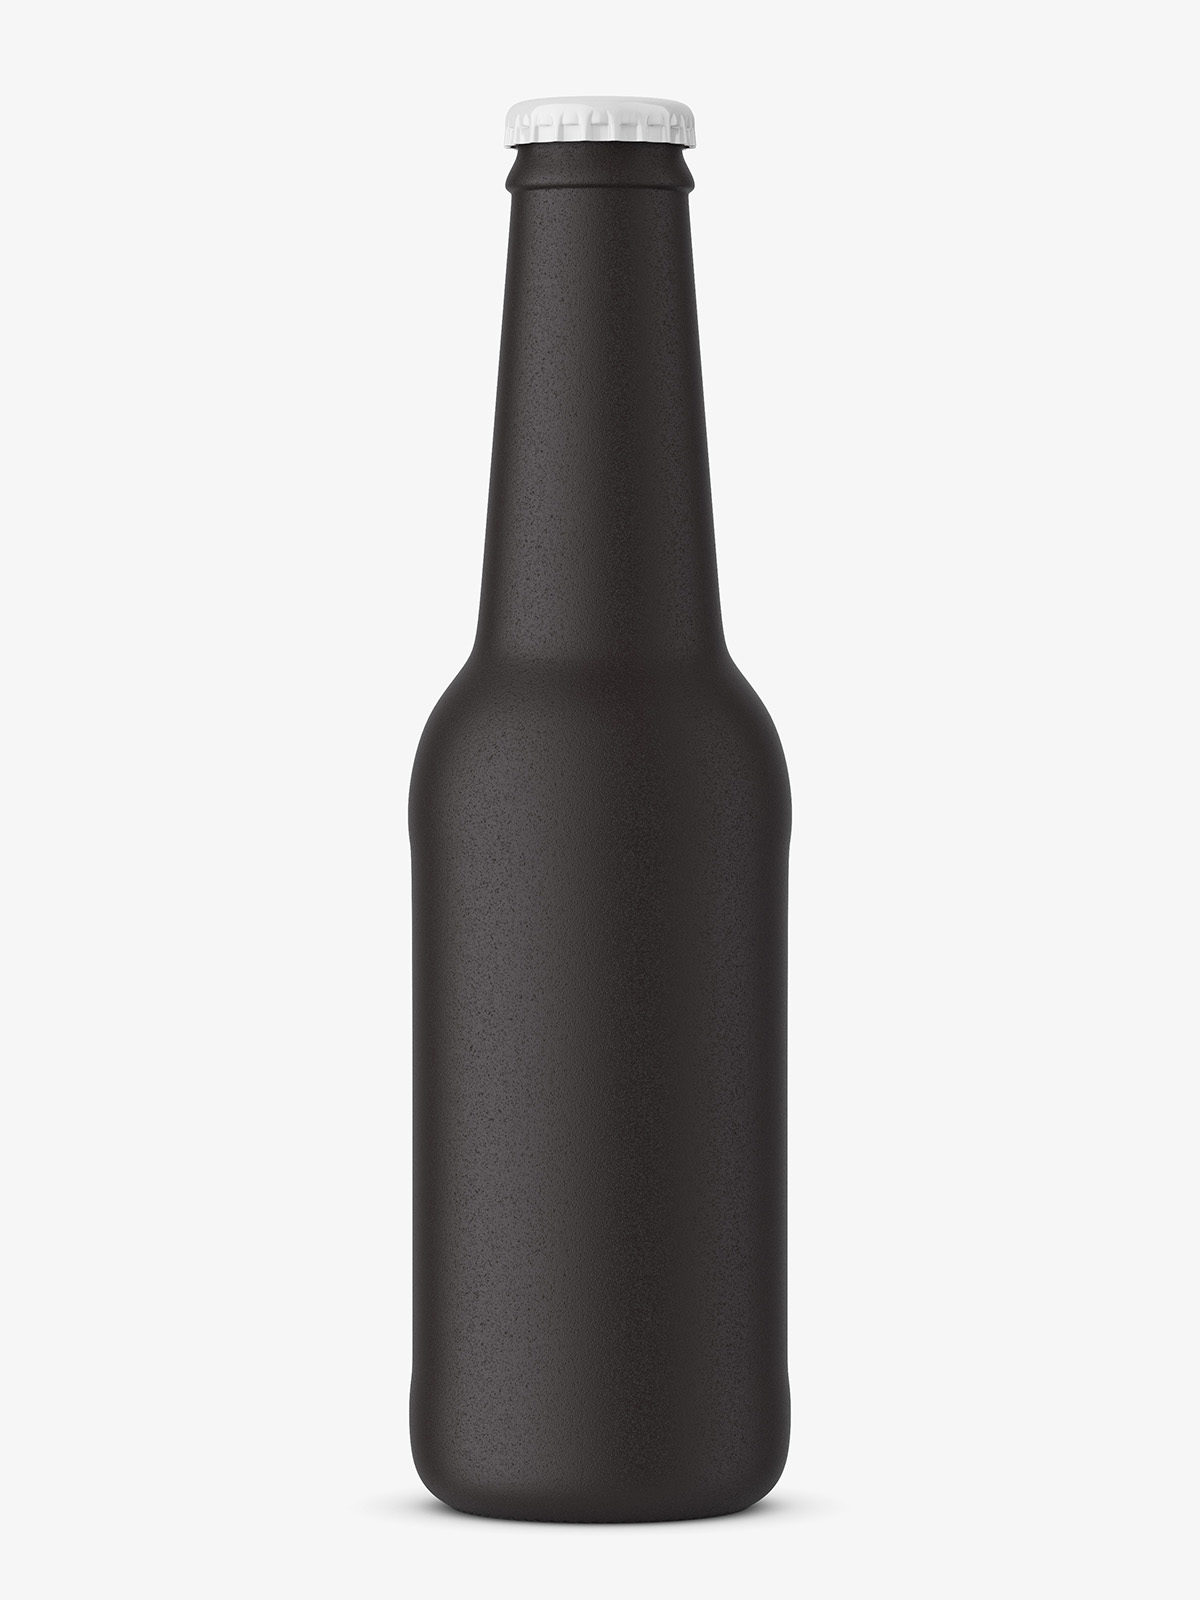 Download Beer bottle mockup / black ceramic - Smarty Mockups